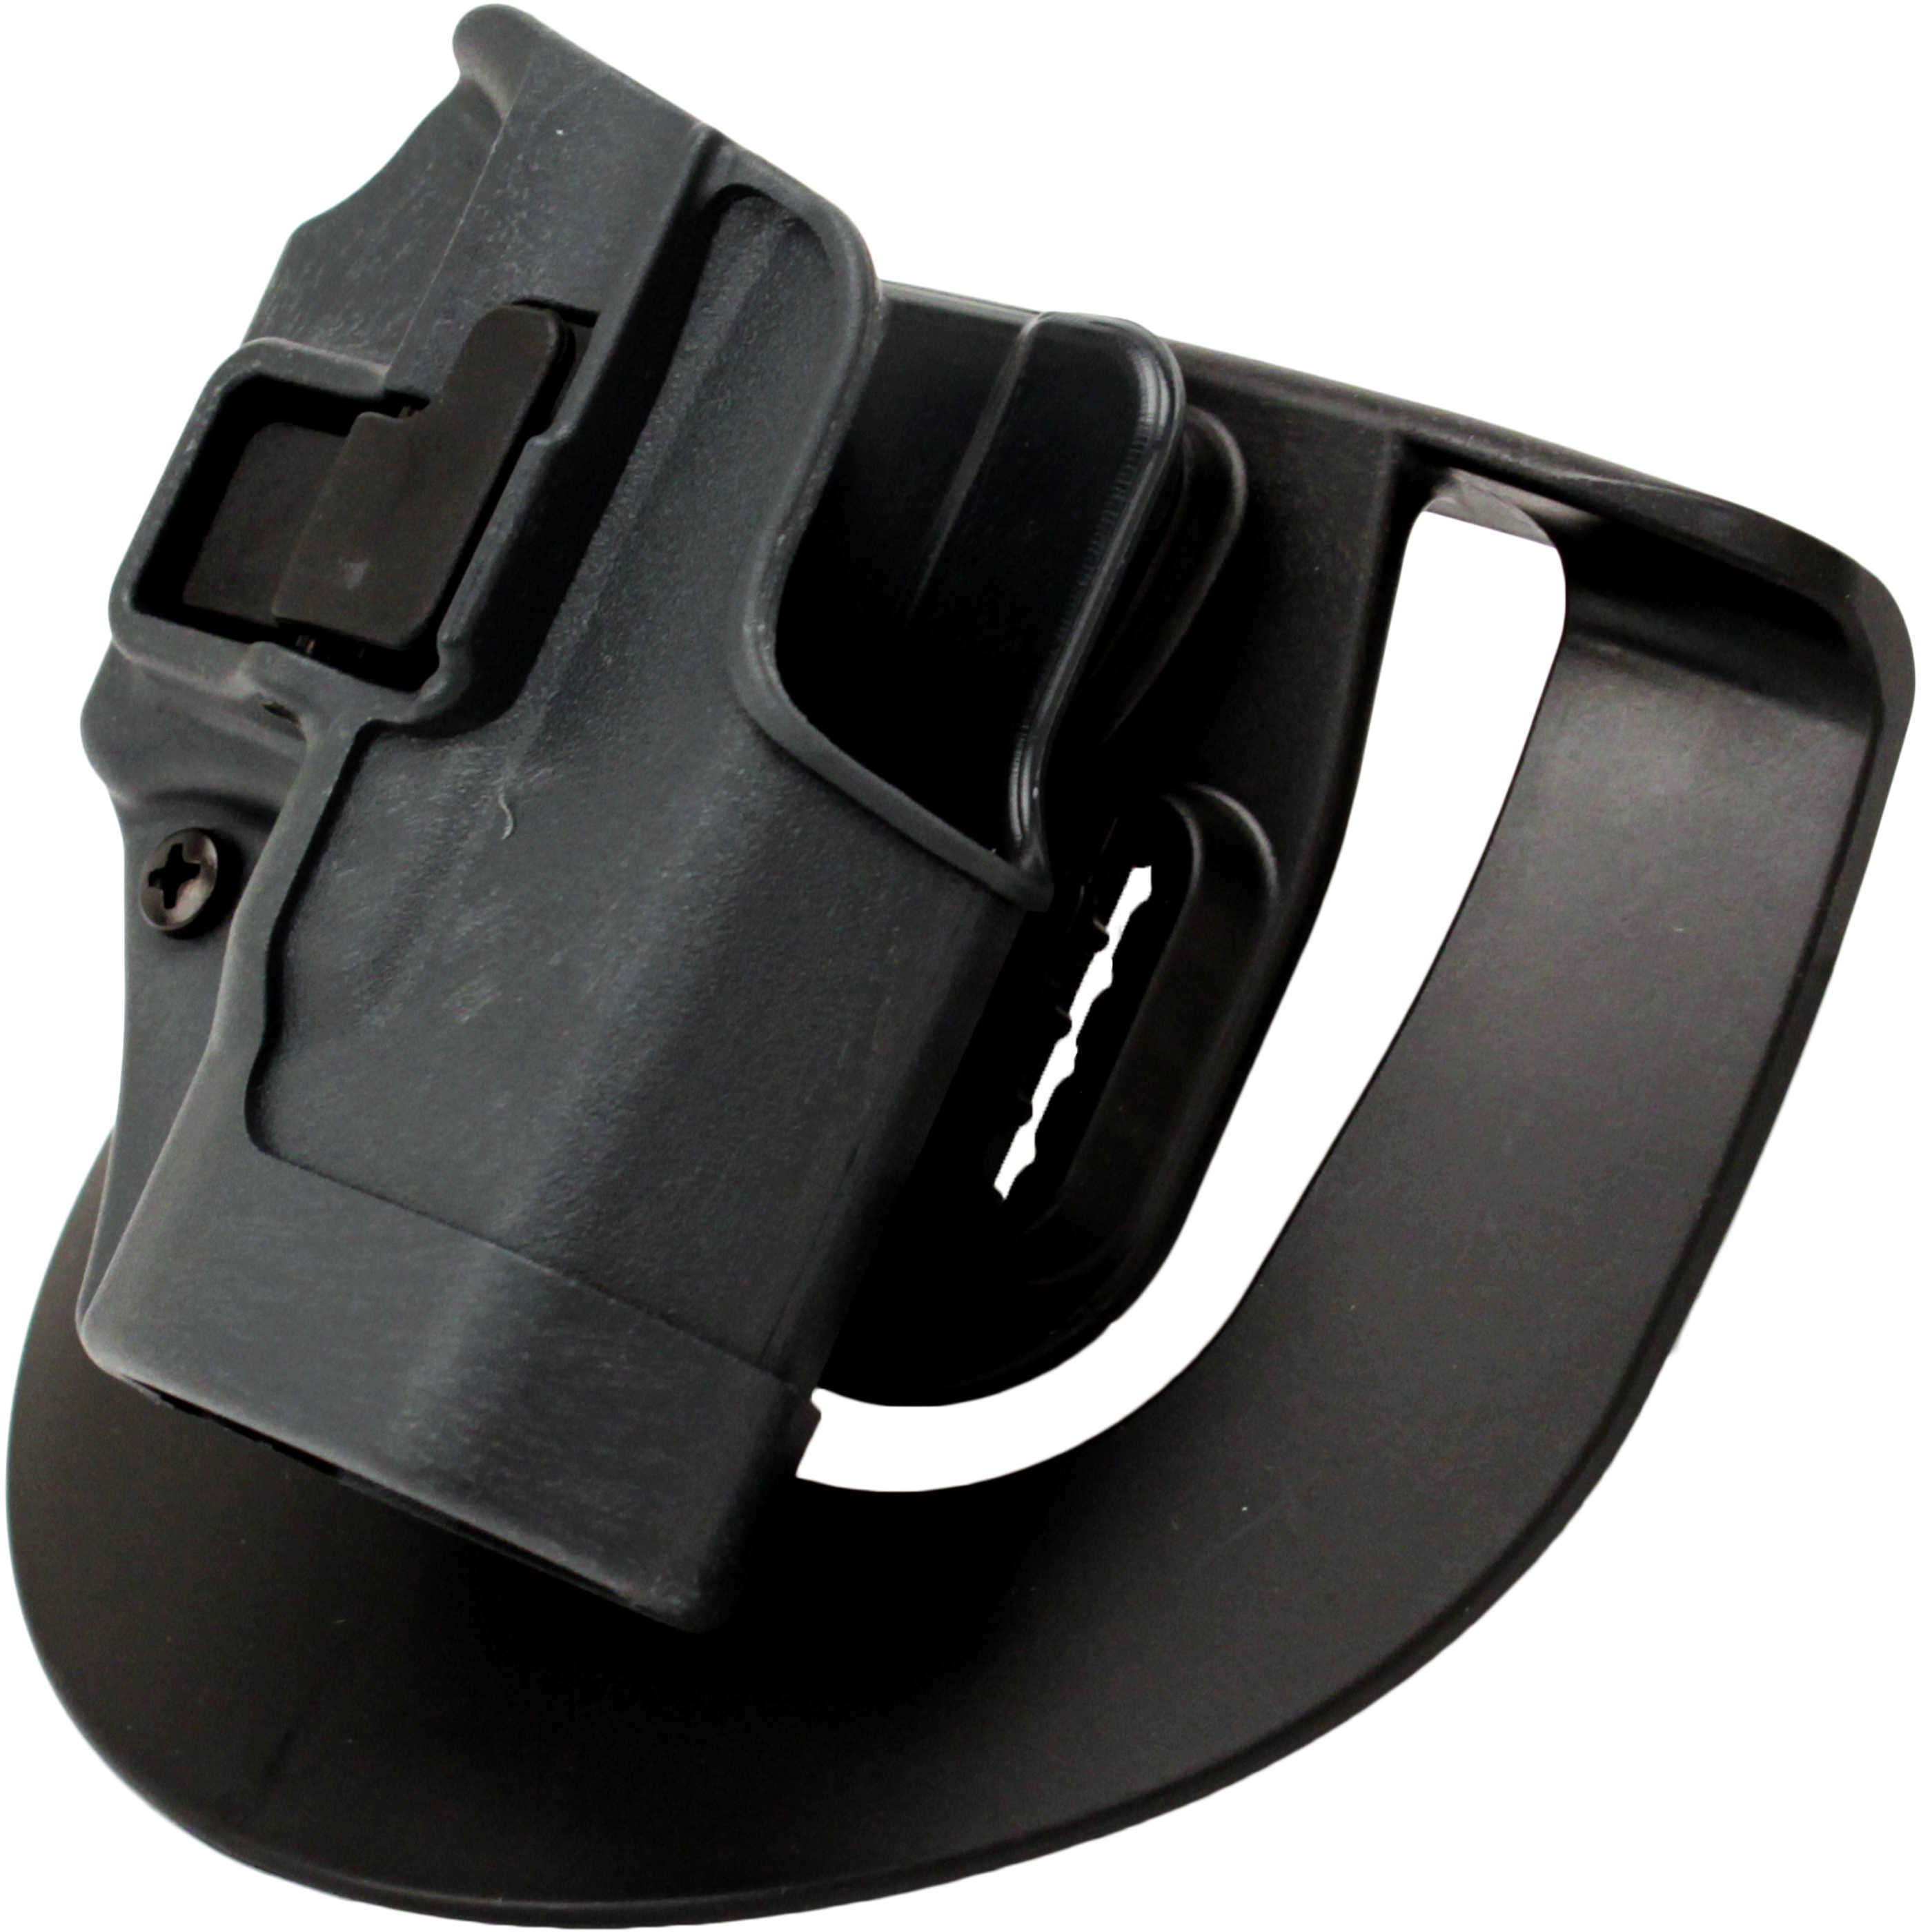 Blackhawk Products Serpa Sportster for Glock 26/27/33 Bk RH